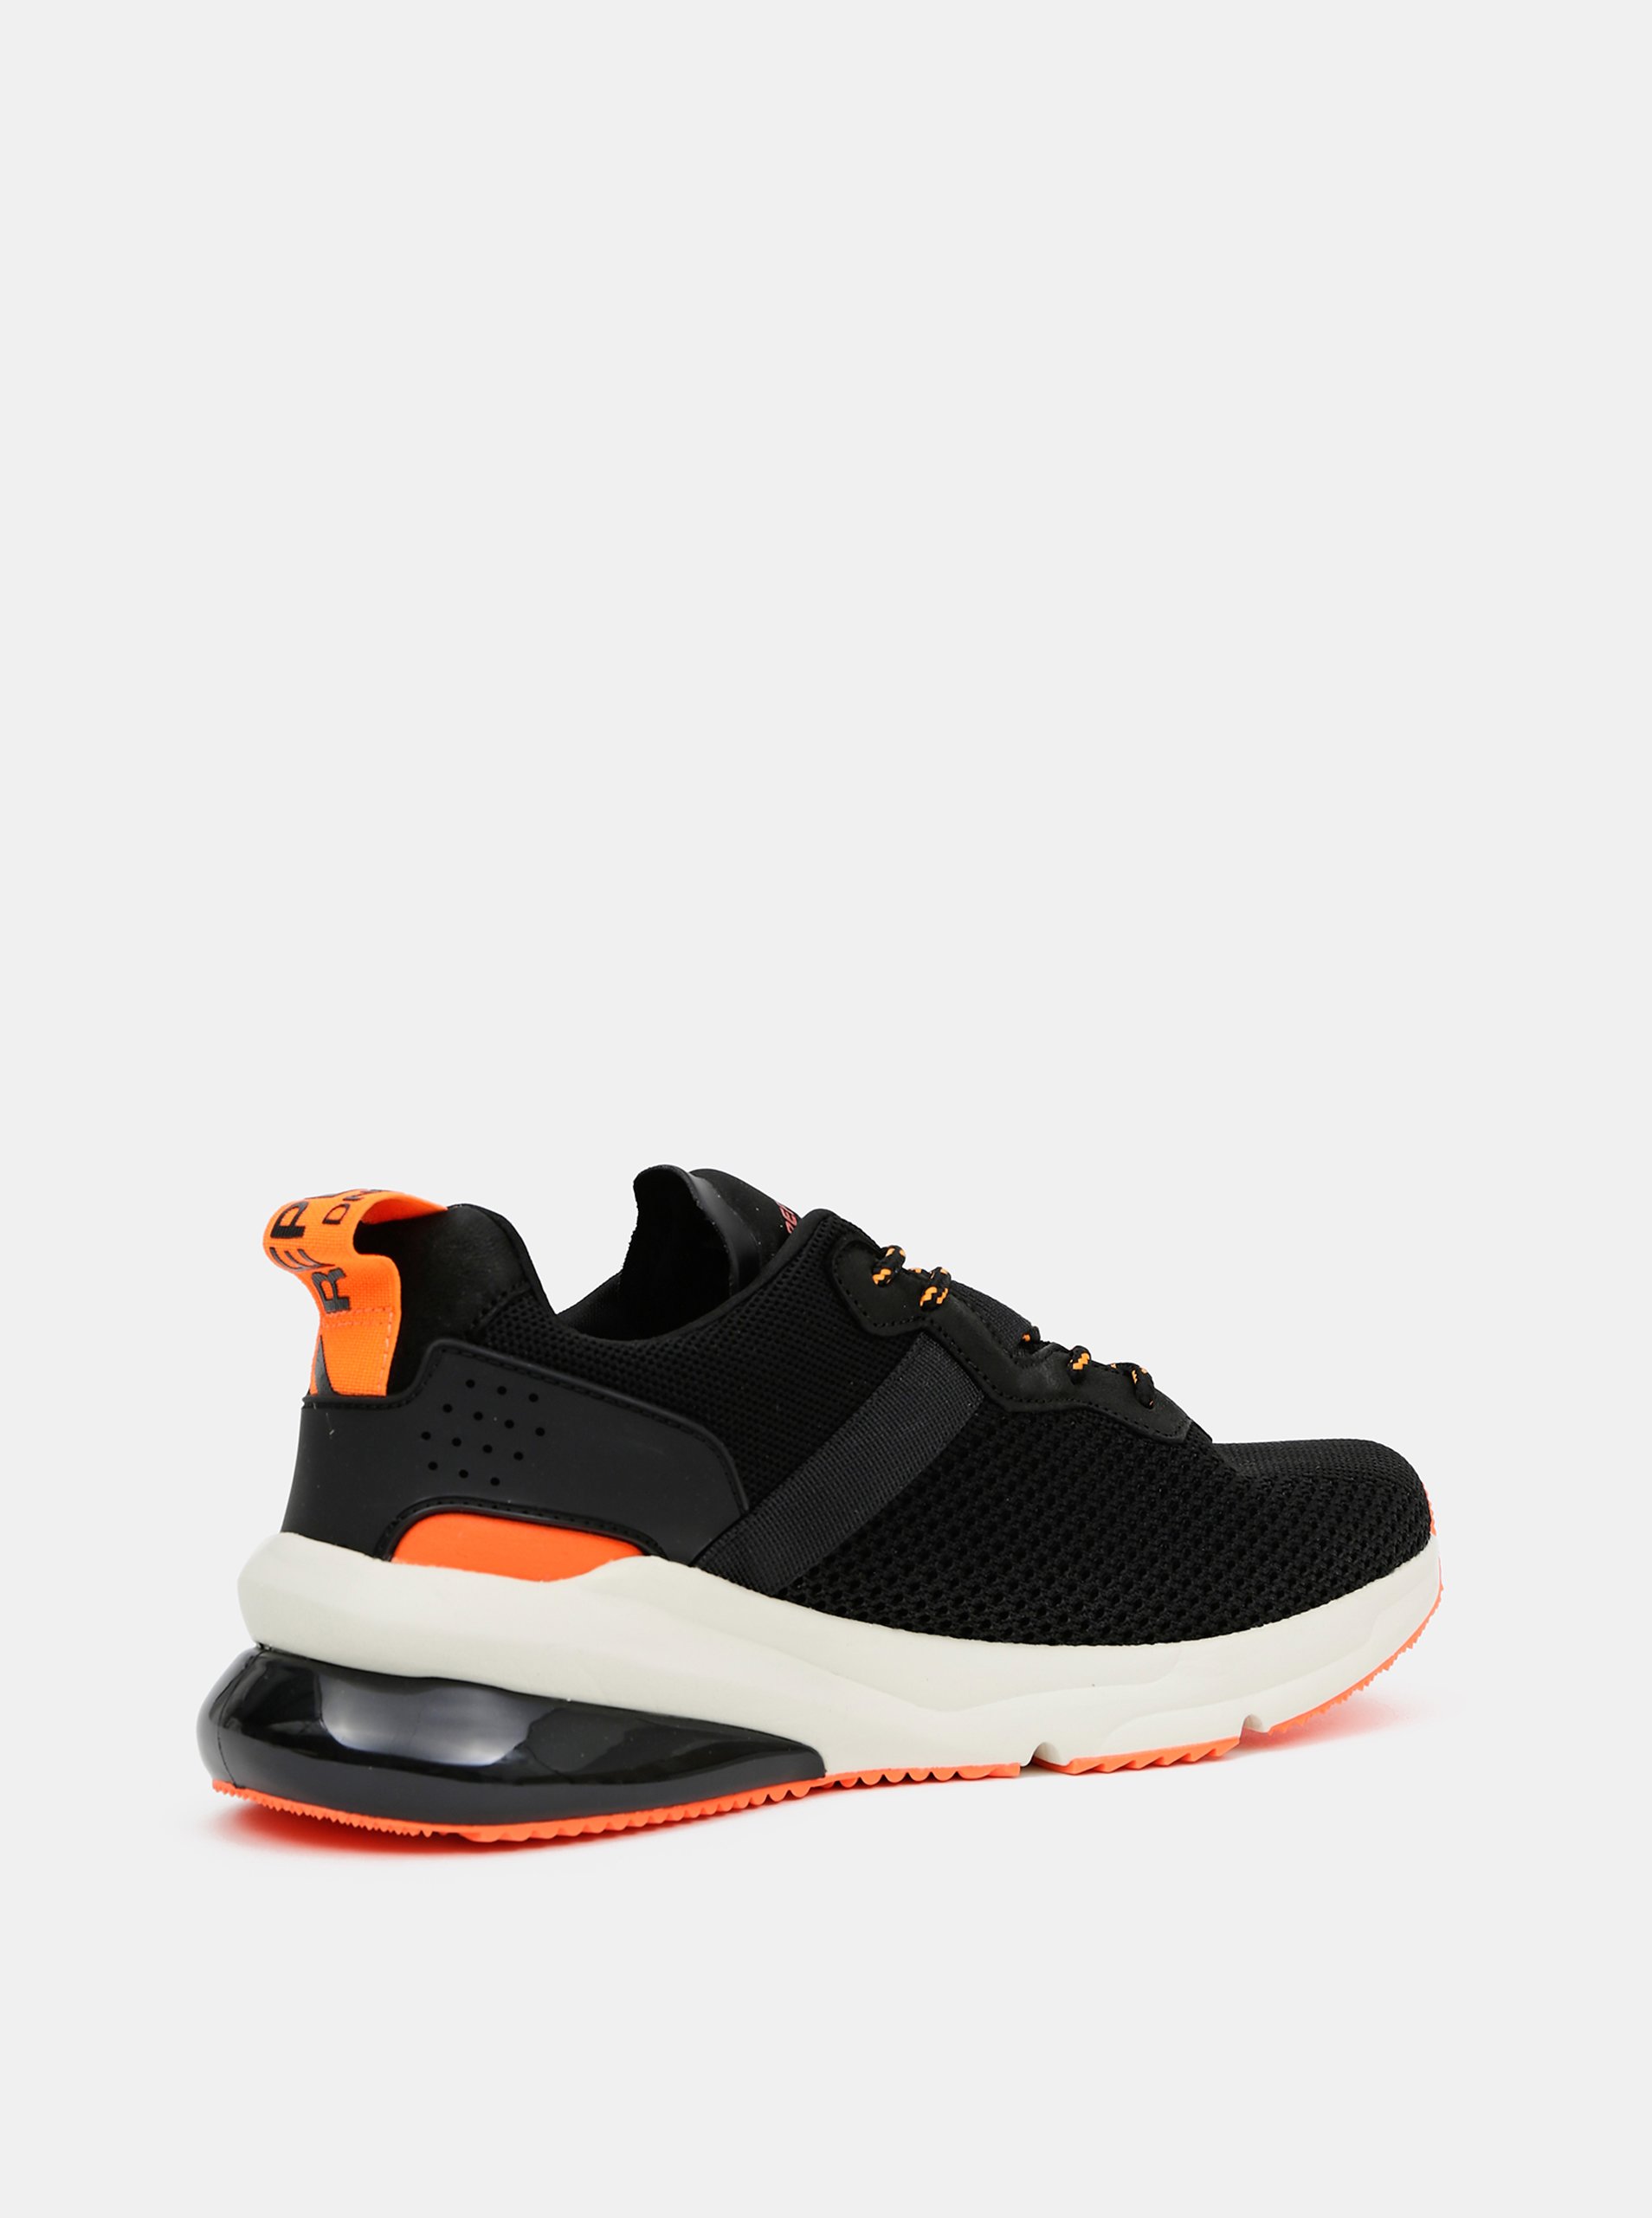 Replay Mens Tamwort Black/Orange Sneakers